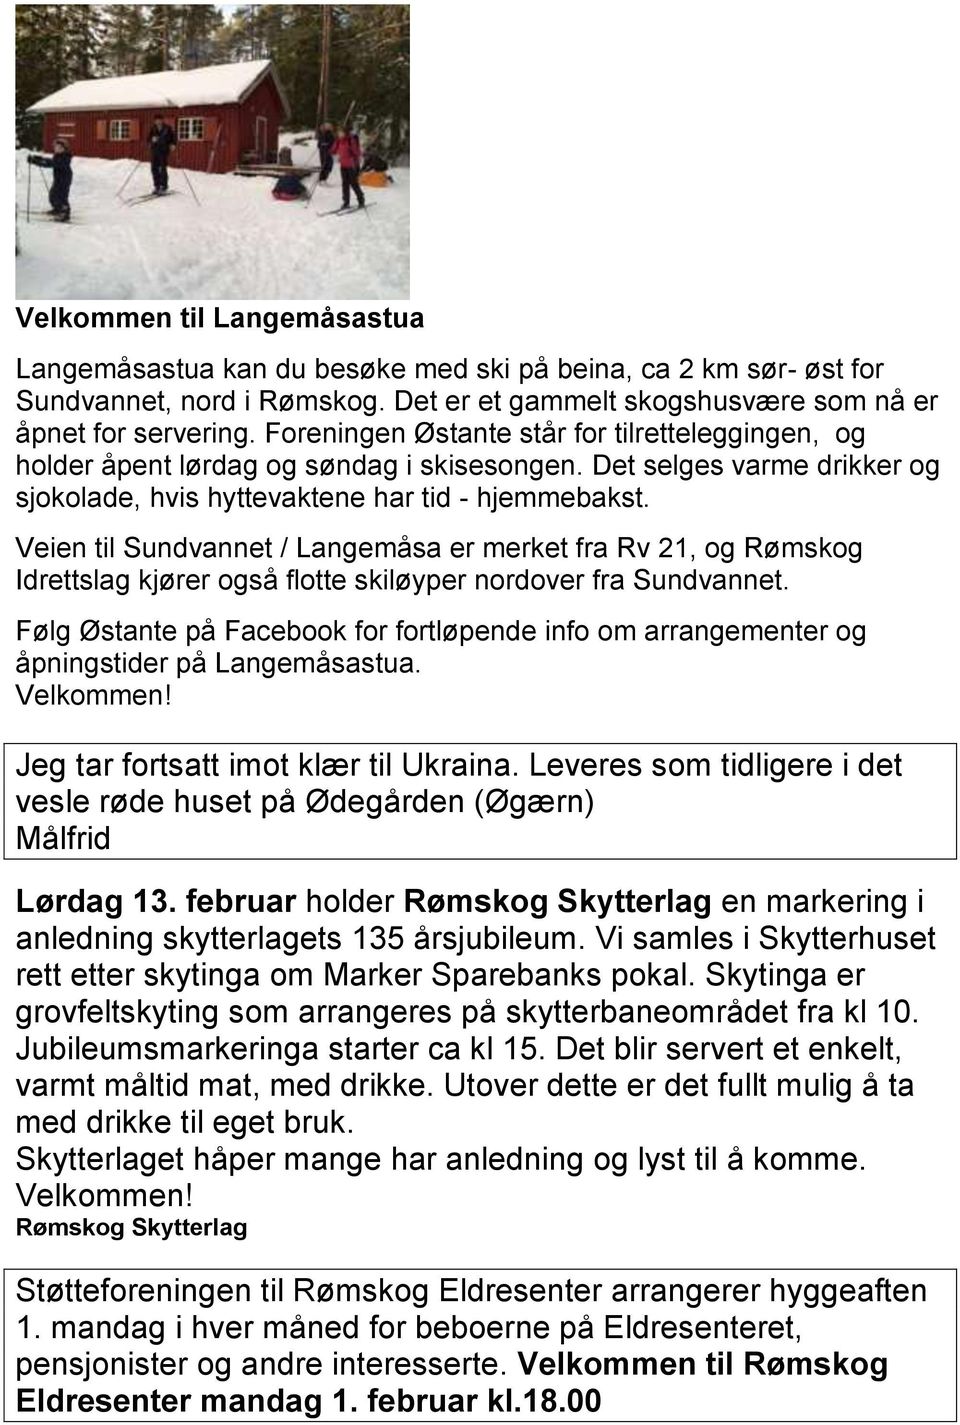 Veien til Sundvannet / Langemåsa er merket fra Rv 21, og Rømskog Idrettslag kjører også flotte skiløyper nordover fra Sundvannet.